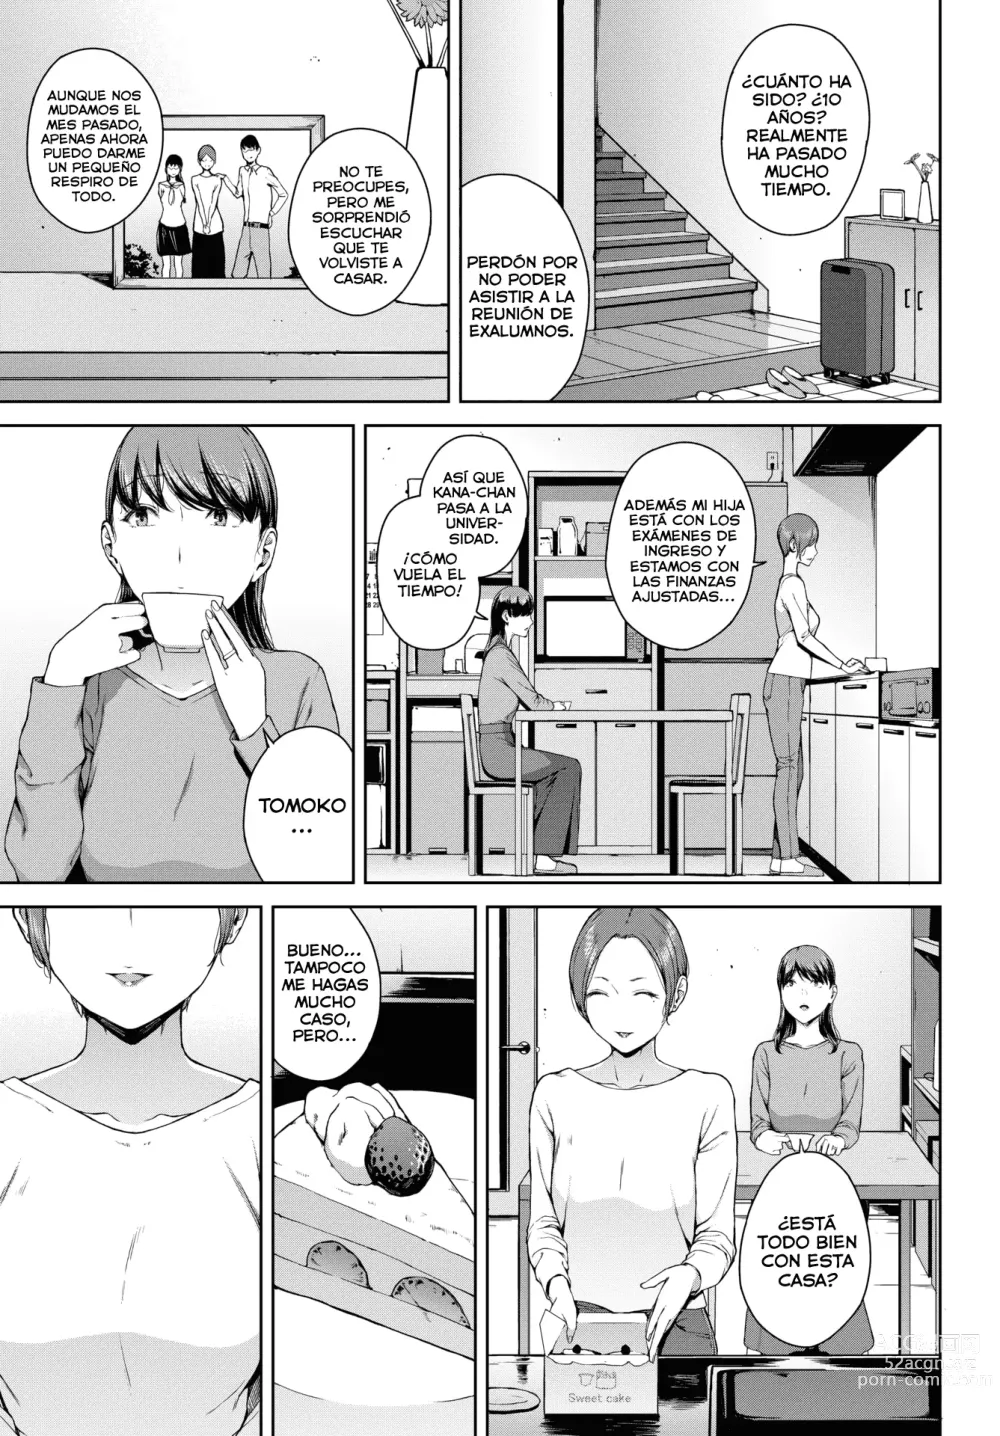 Page 3 of manga Yoriko Parte 02